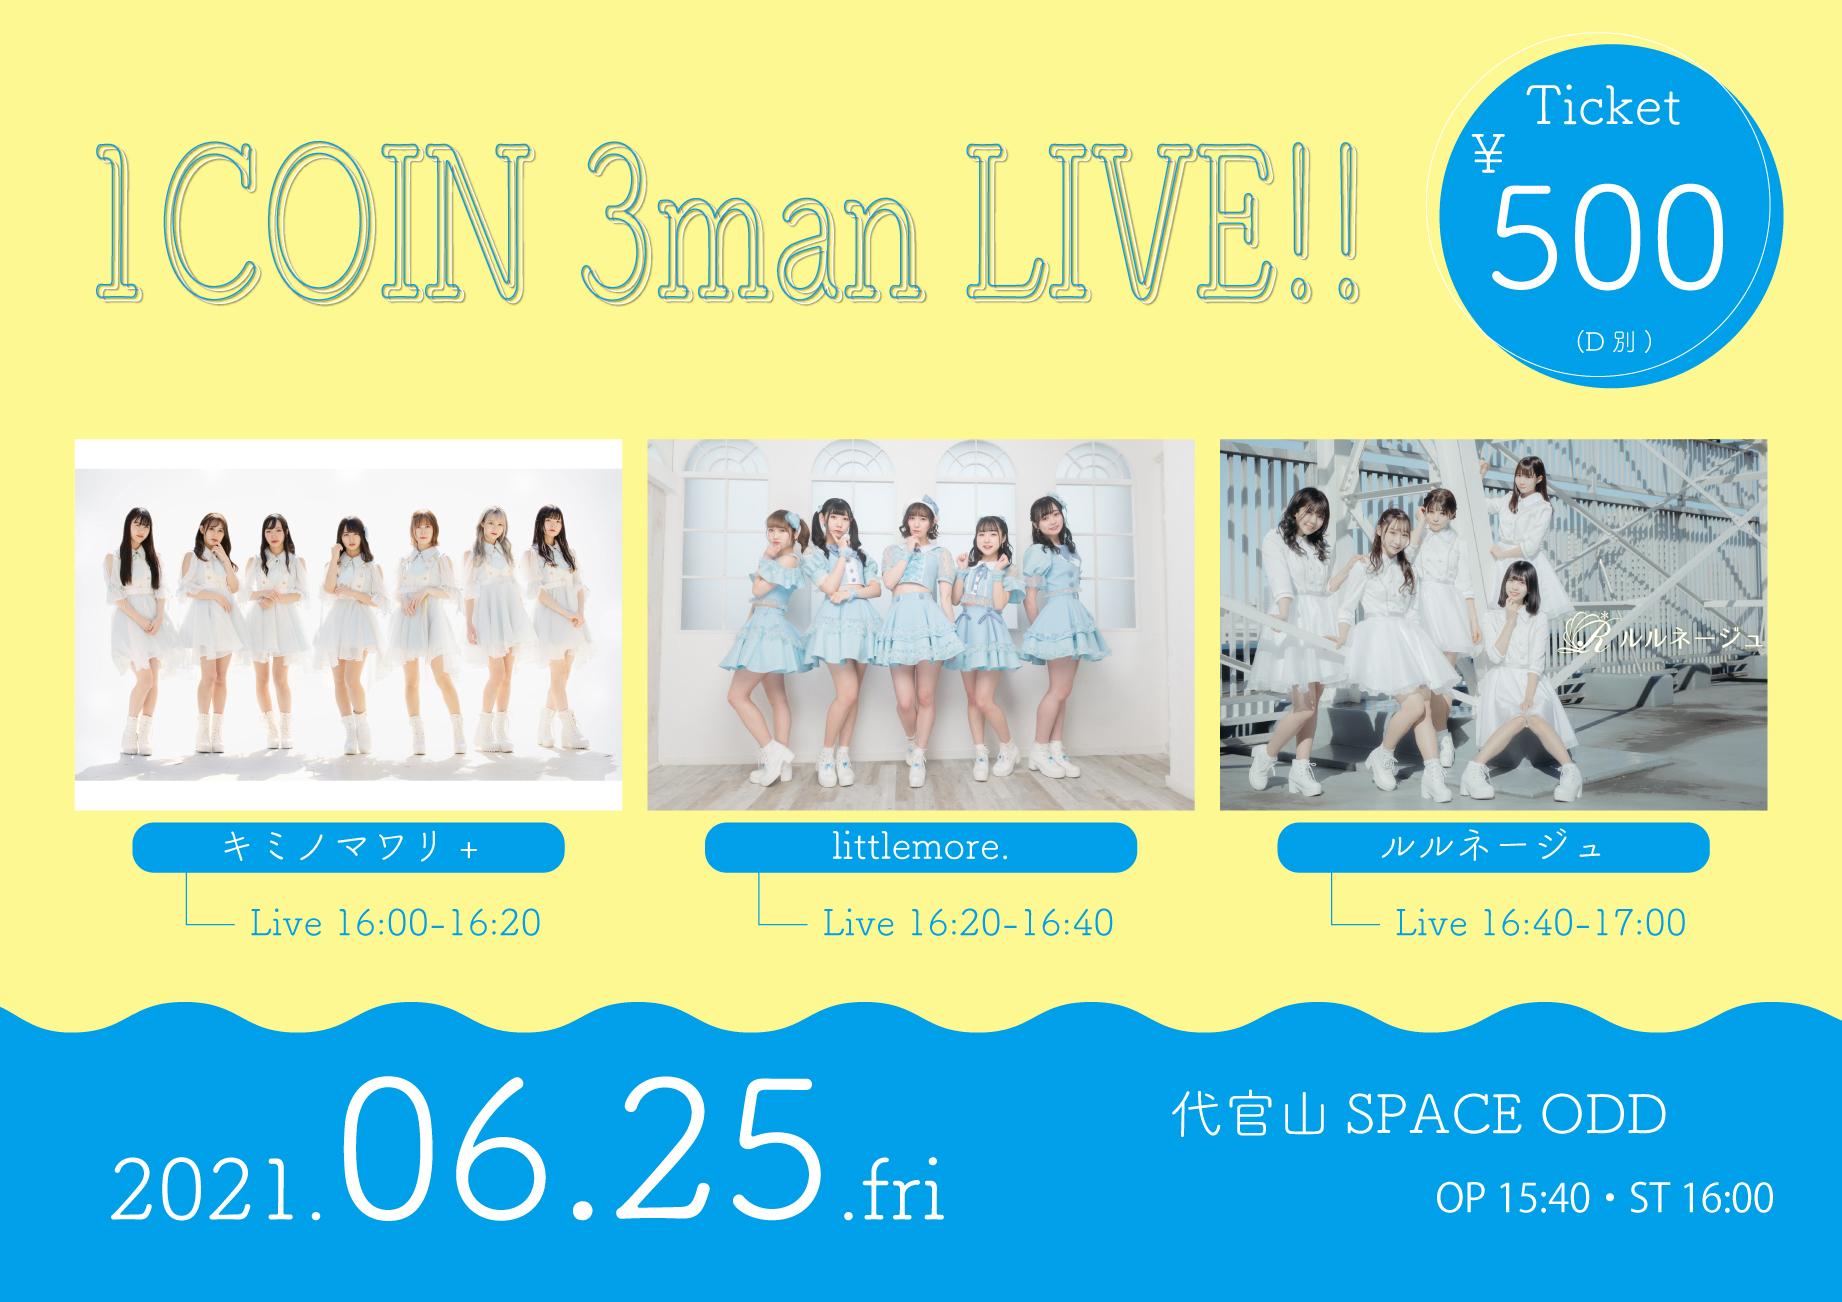 6/25(金) littlemore. × ルルネージュ × キミノマワリ+ 1COIN 3man LIVE!!